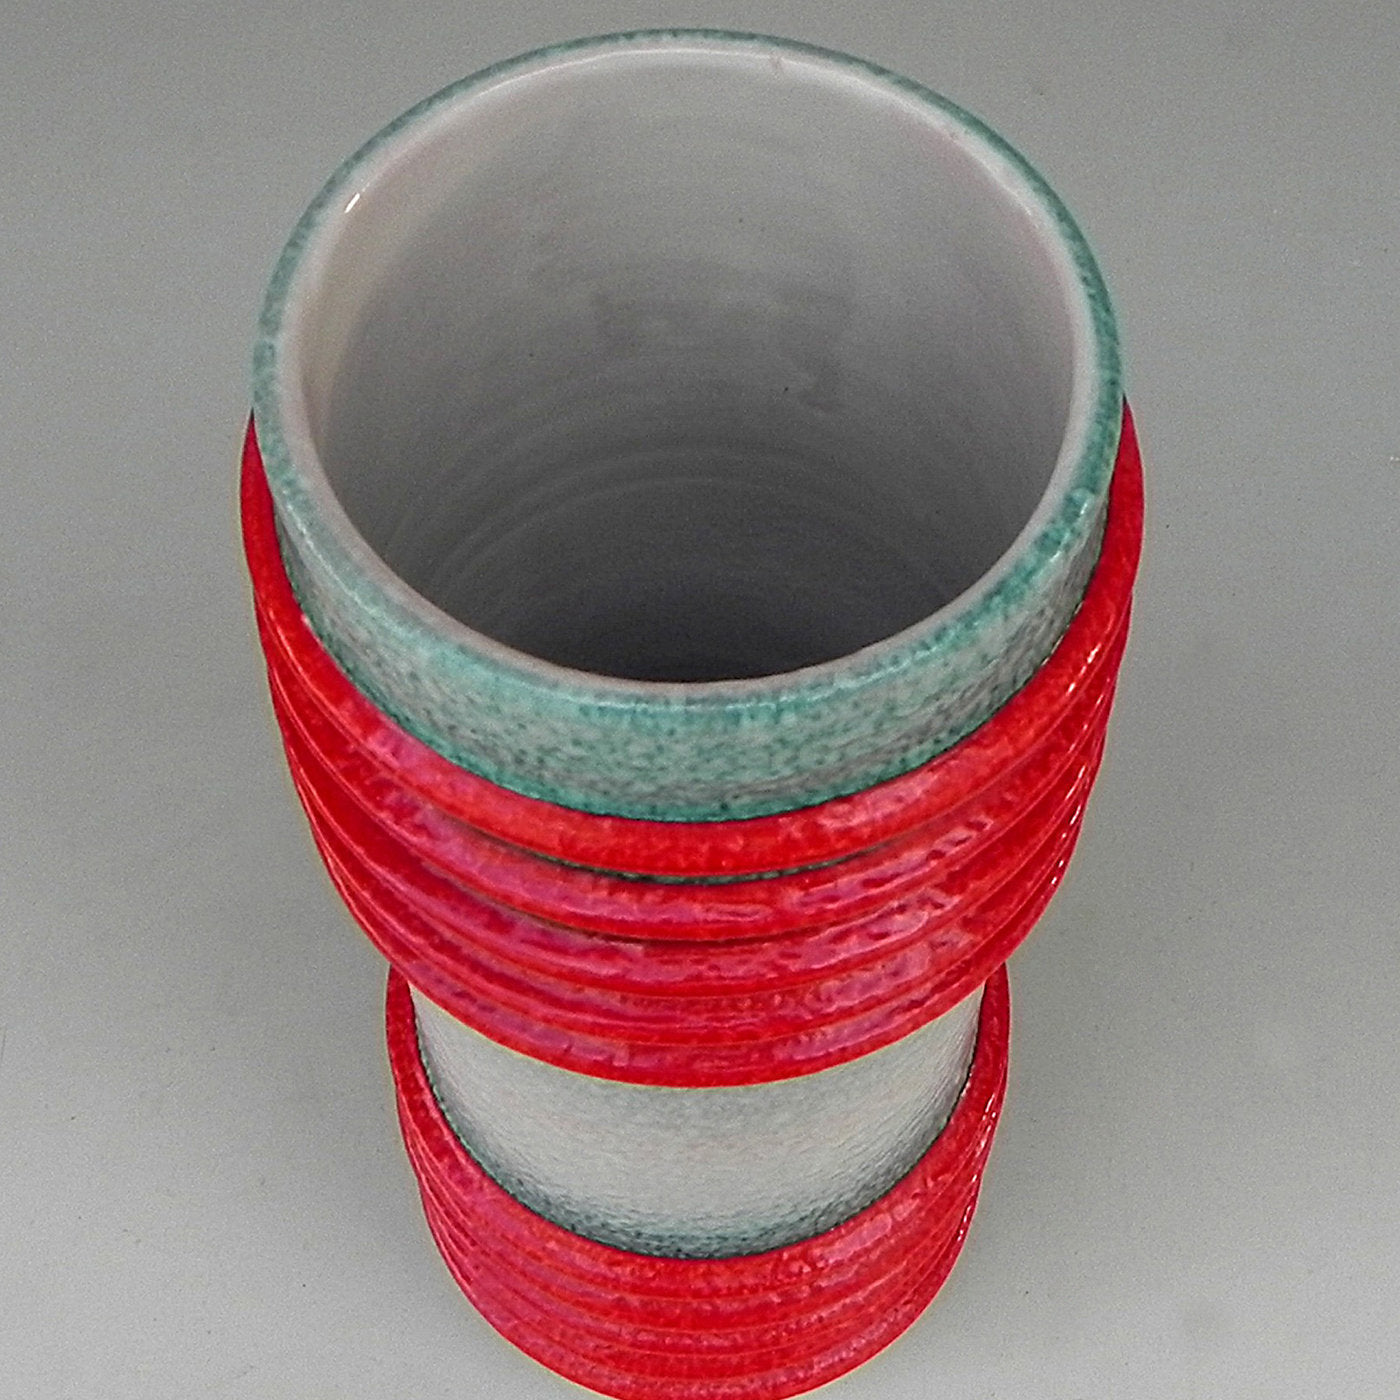 Motorato Assoluto Ceramic Vase - Alternative view 1